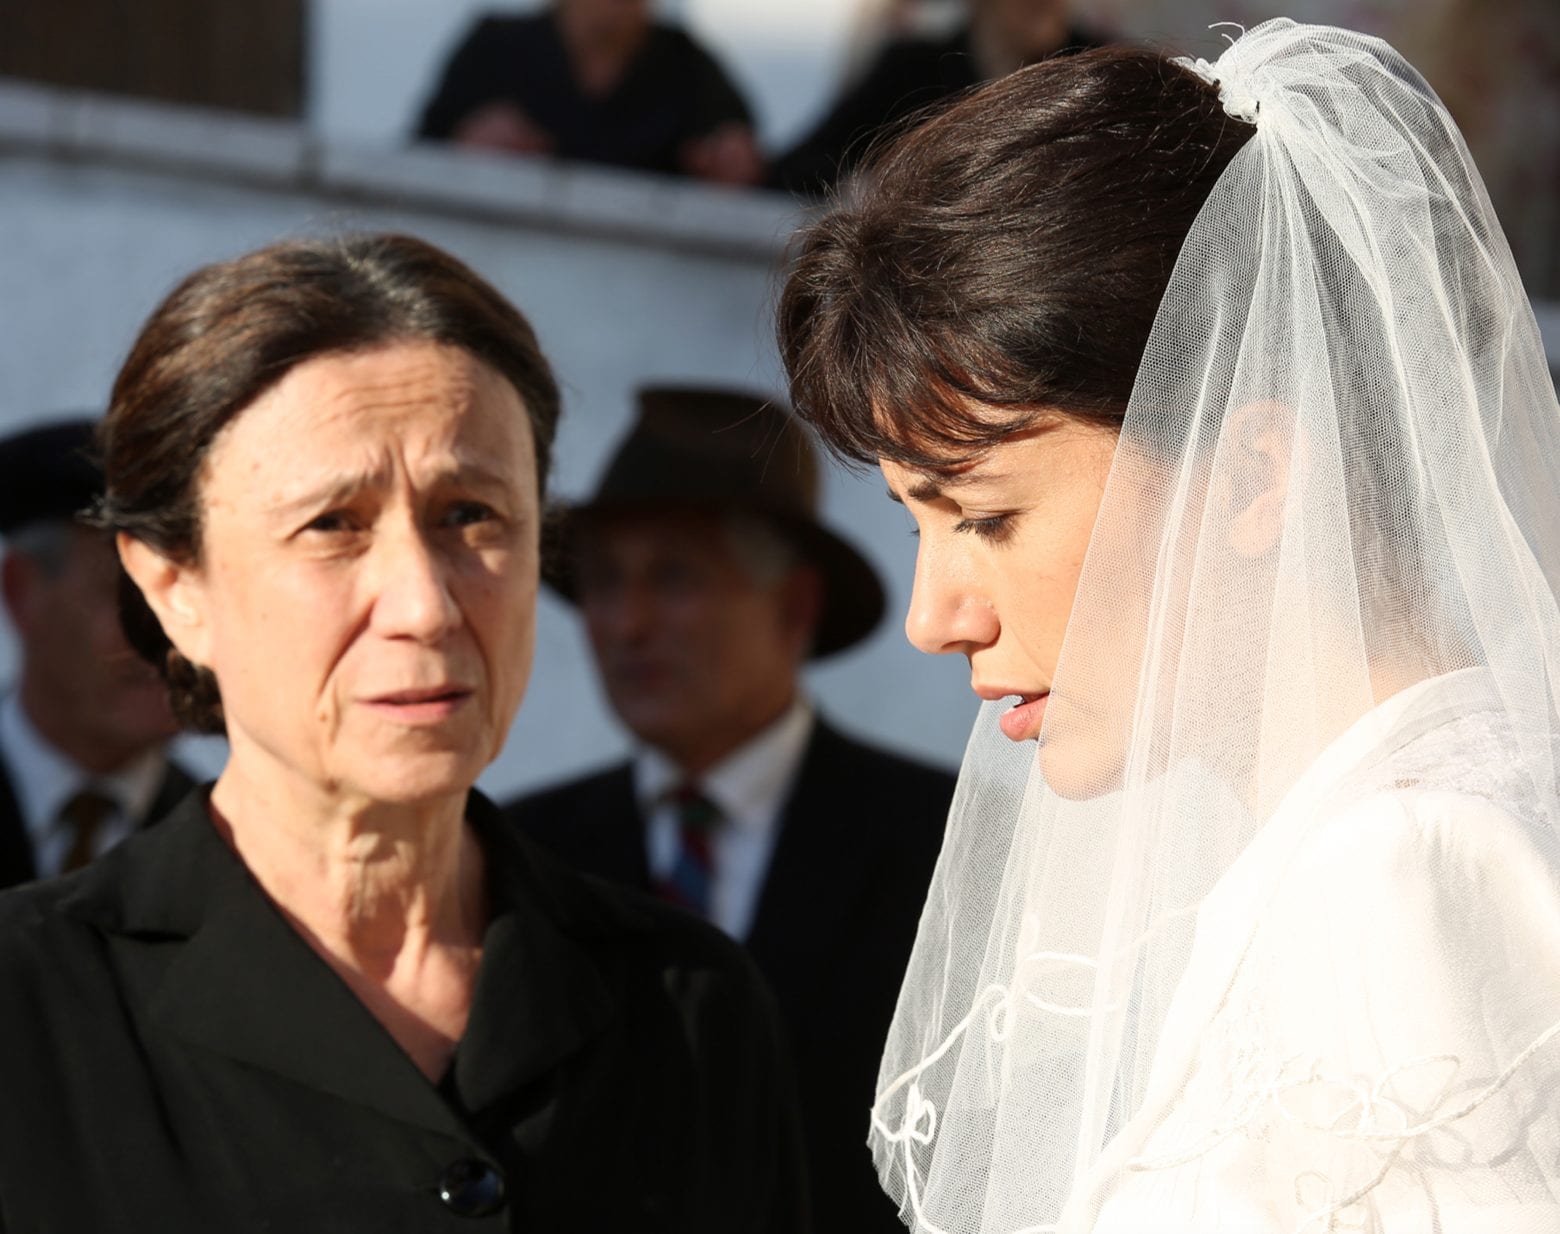 Mezza Italia contro "La sposa" nonostante il boom di ascolti: "Piena di cliché grotteschi e stereotipati"